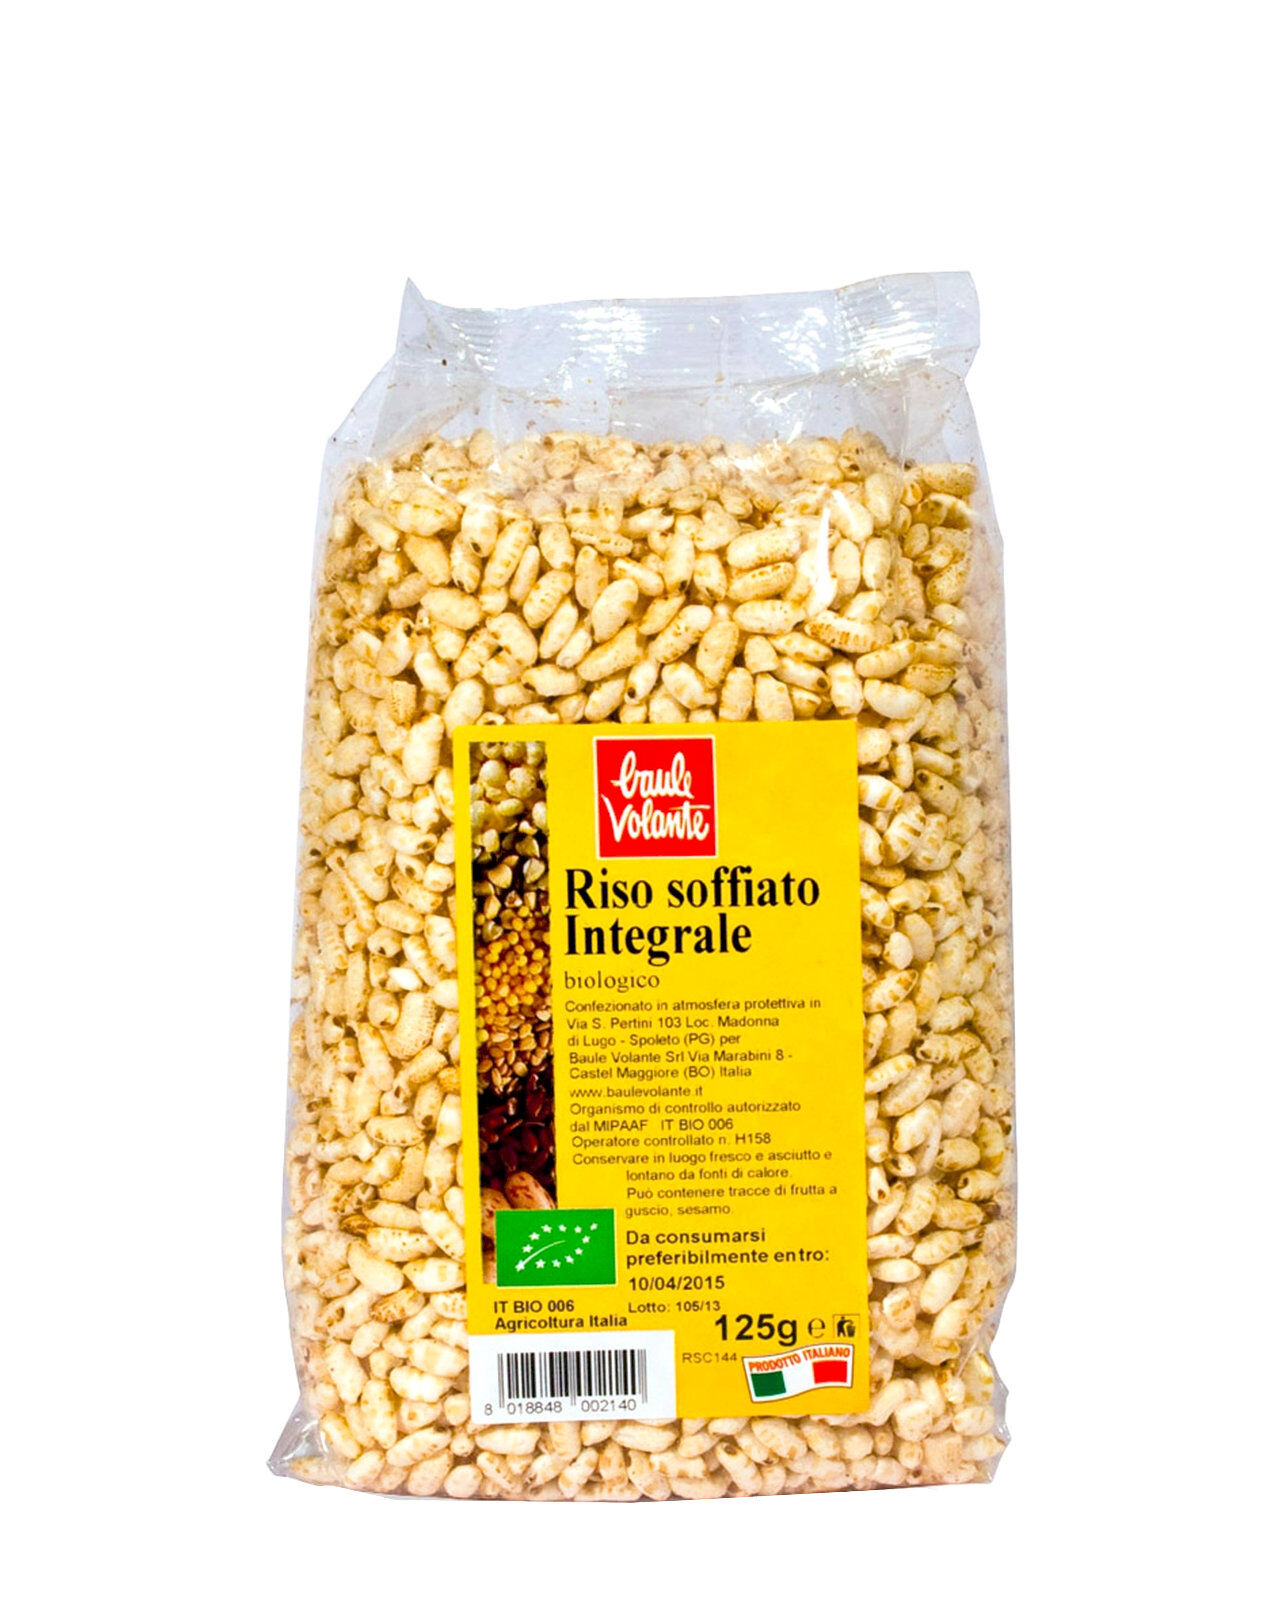 baule volante cereali soffiati - riso integrale soffiato 125 grammi